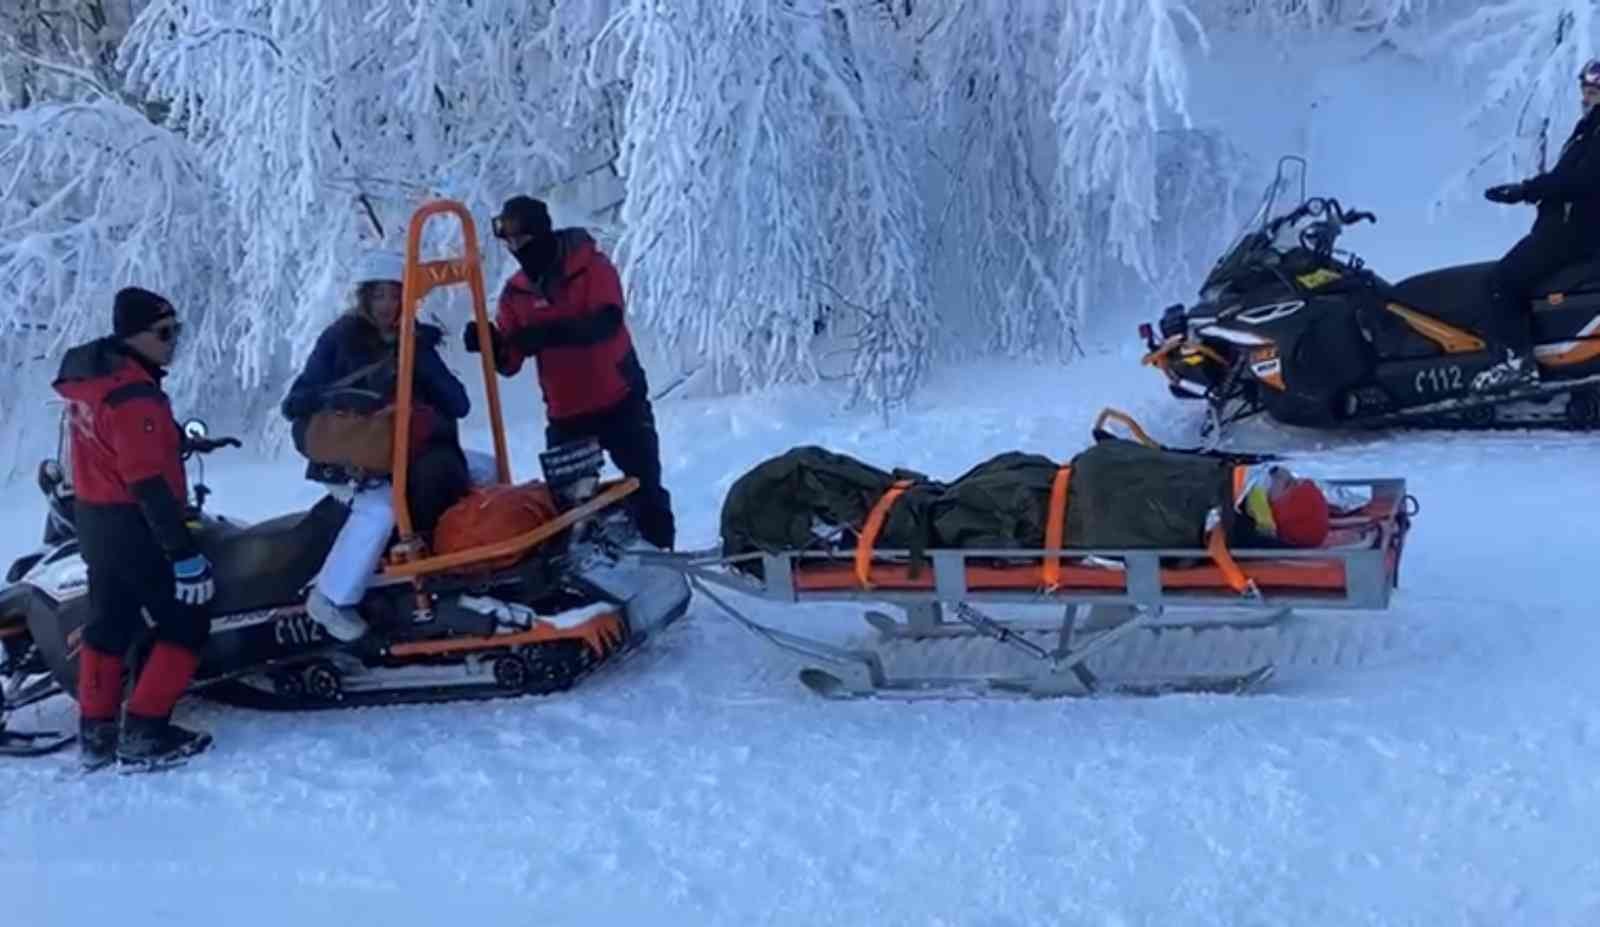 Kayak yaparken düşen vatandaş paletli kızak ile kurtarıldı #kocaeli